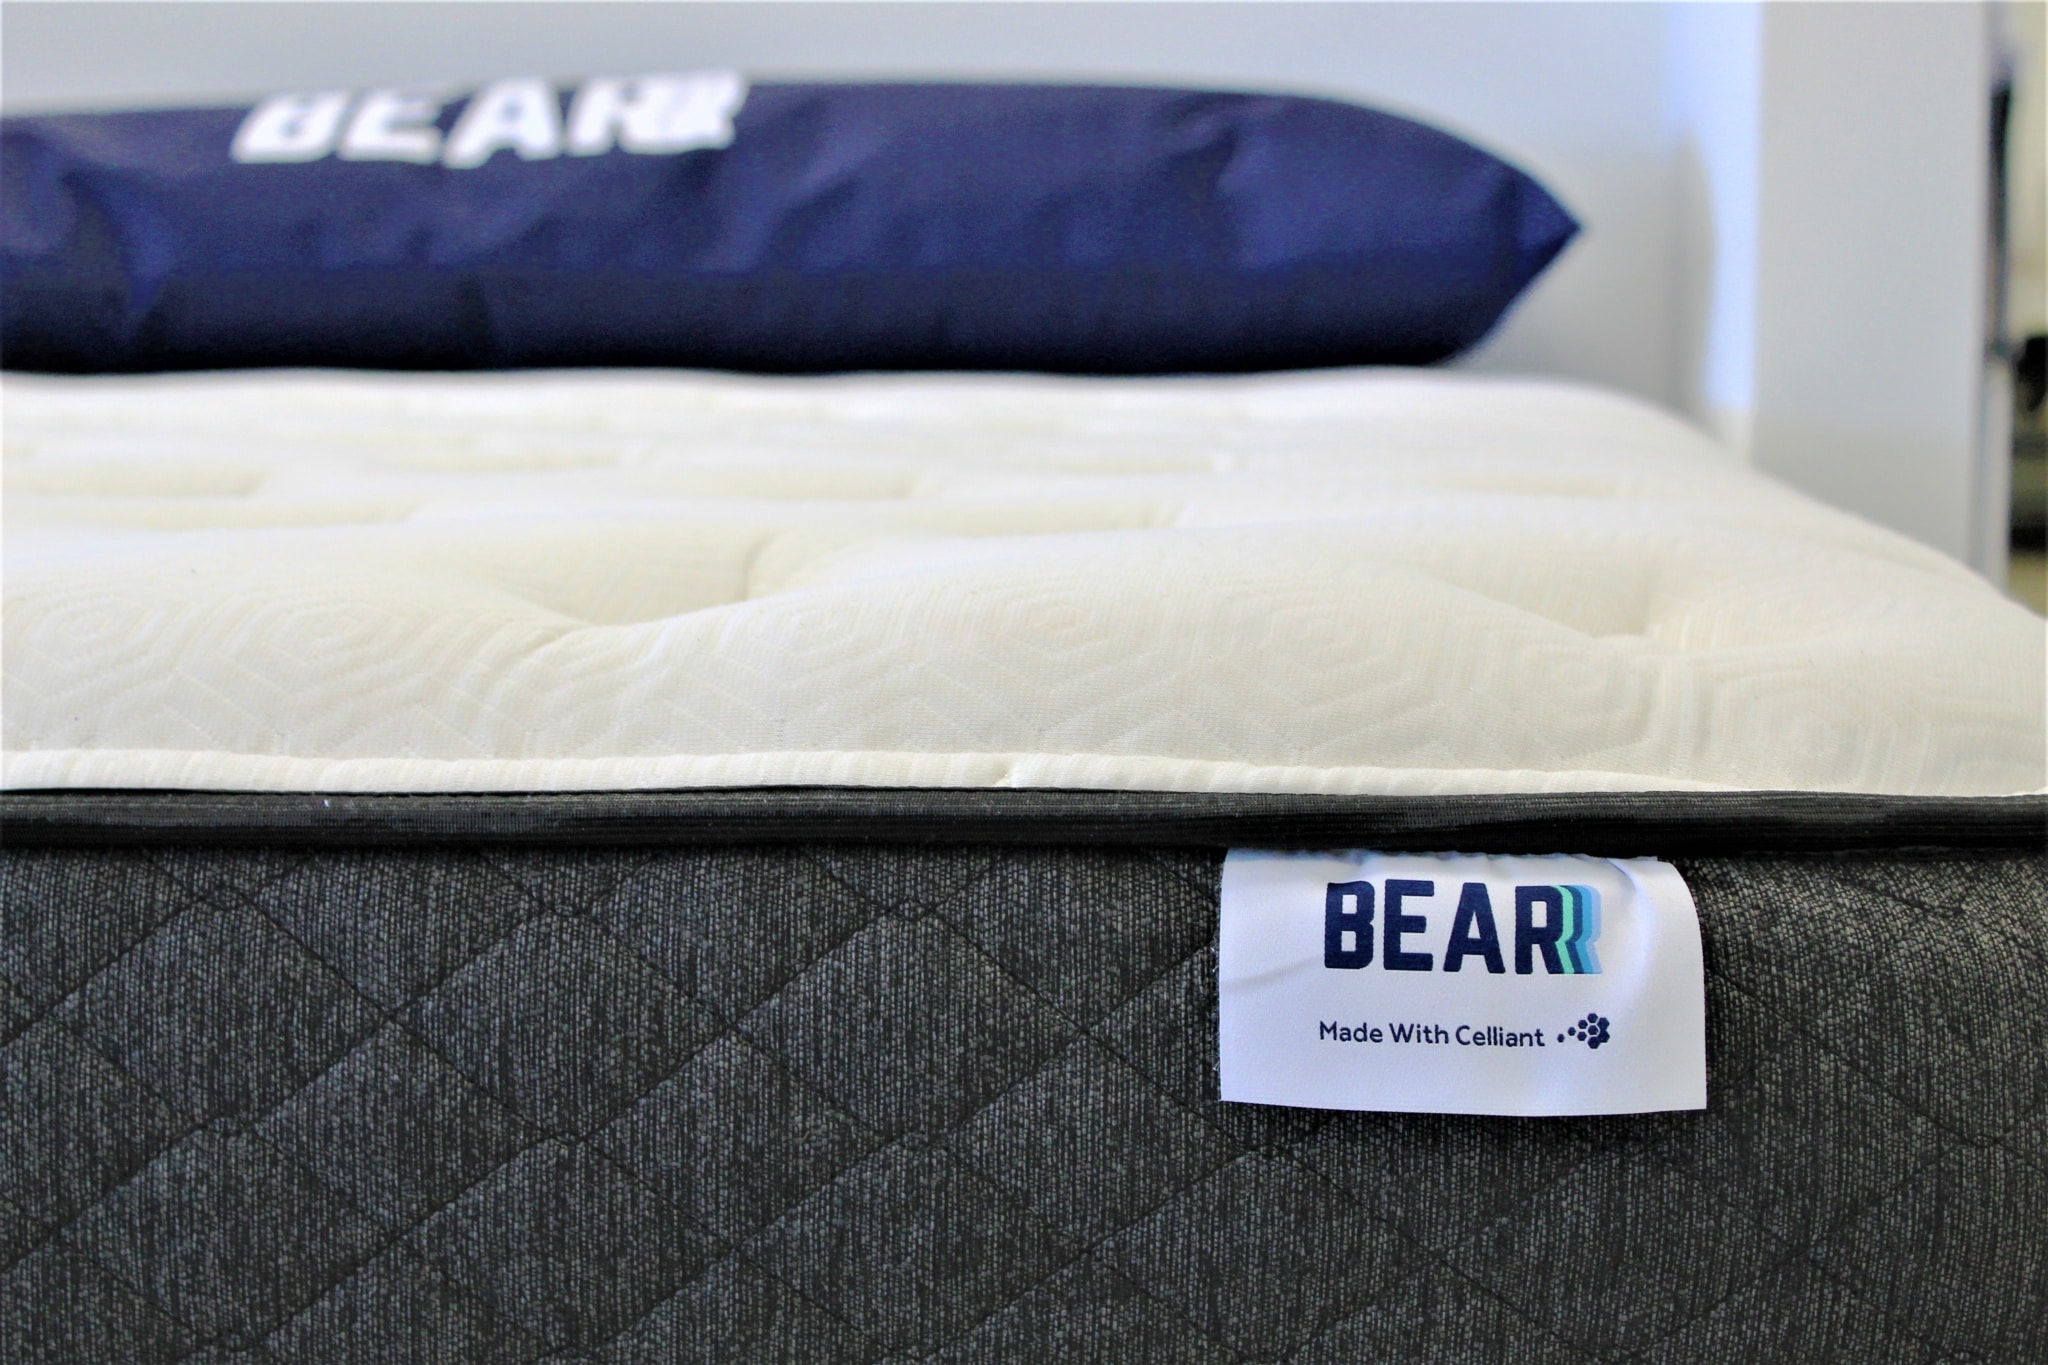 bear hybrid mattress review